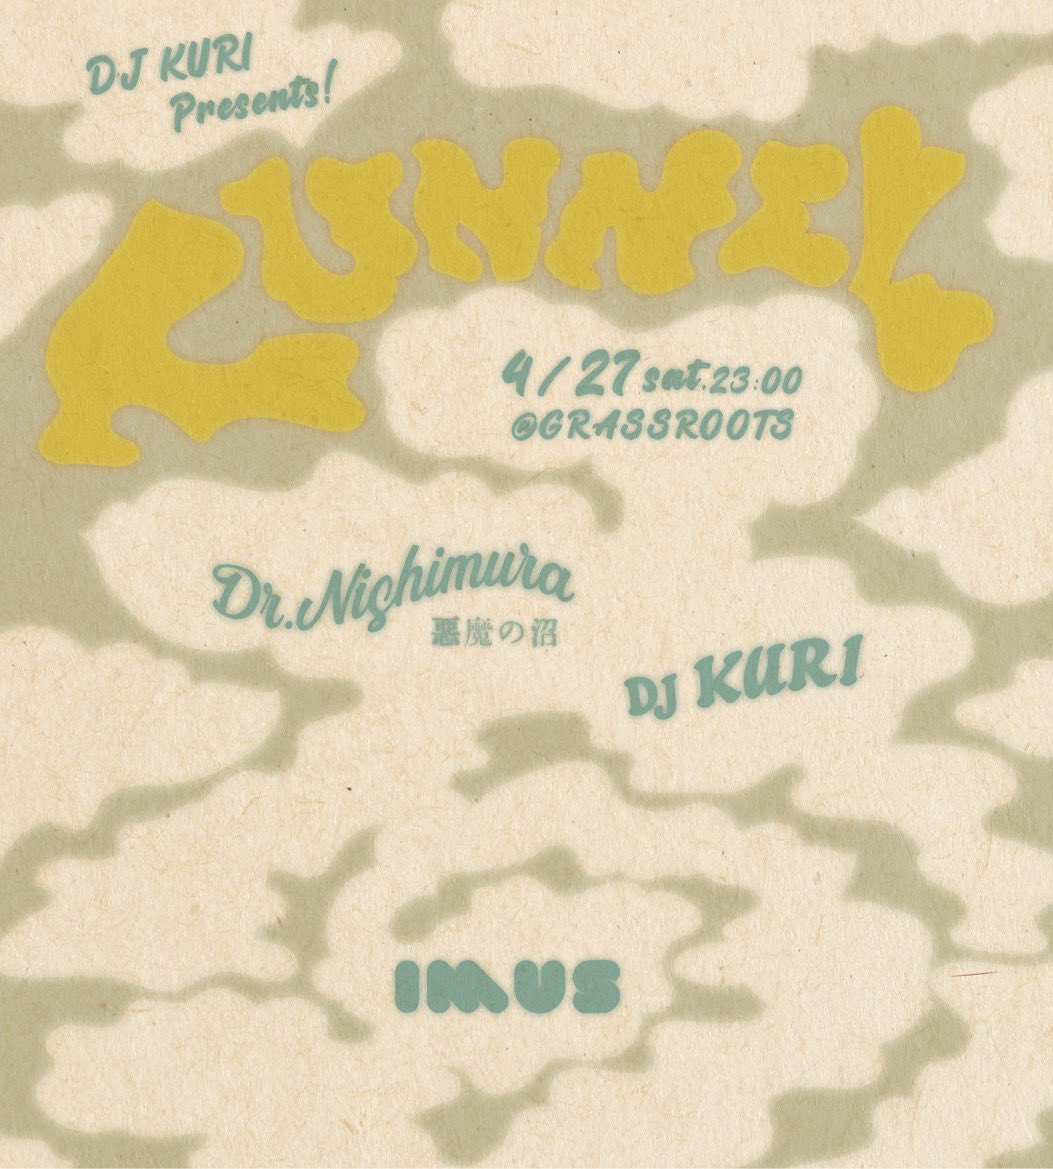 【今週のG】 4/27(sat) DJ KURI presents 『TUNNEL』 23:00 DJ: Dr.Nishimura (悪魔の沼) DJ KURI imus ☞ blog.goo.ne.jp/grassroots_tok… ☞ instagram.com/grassroots_tok…